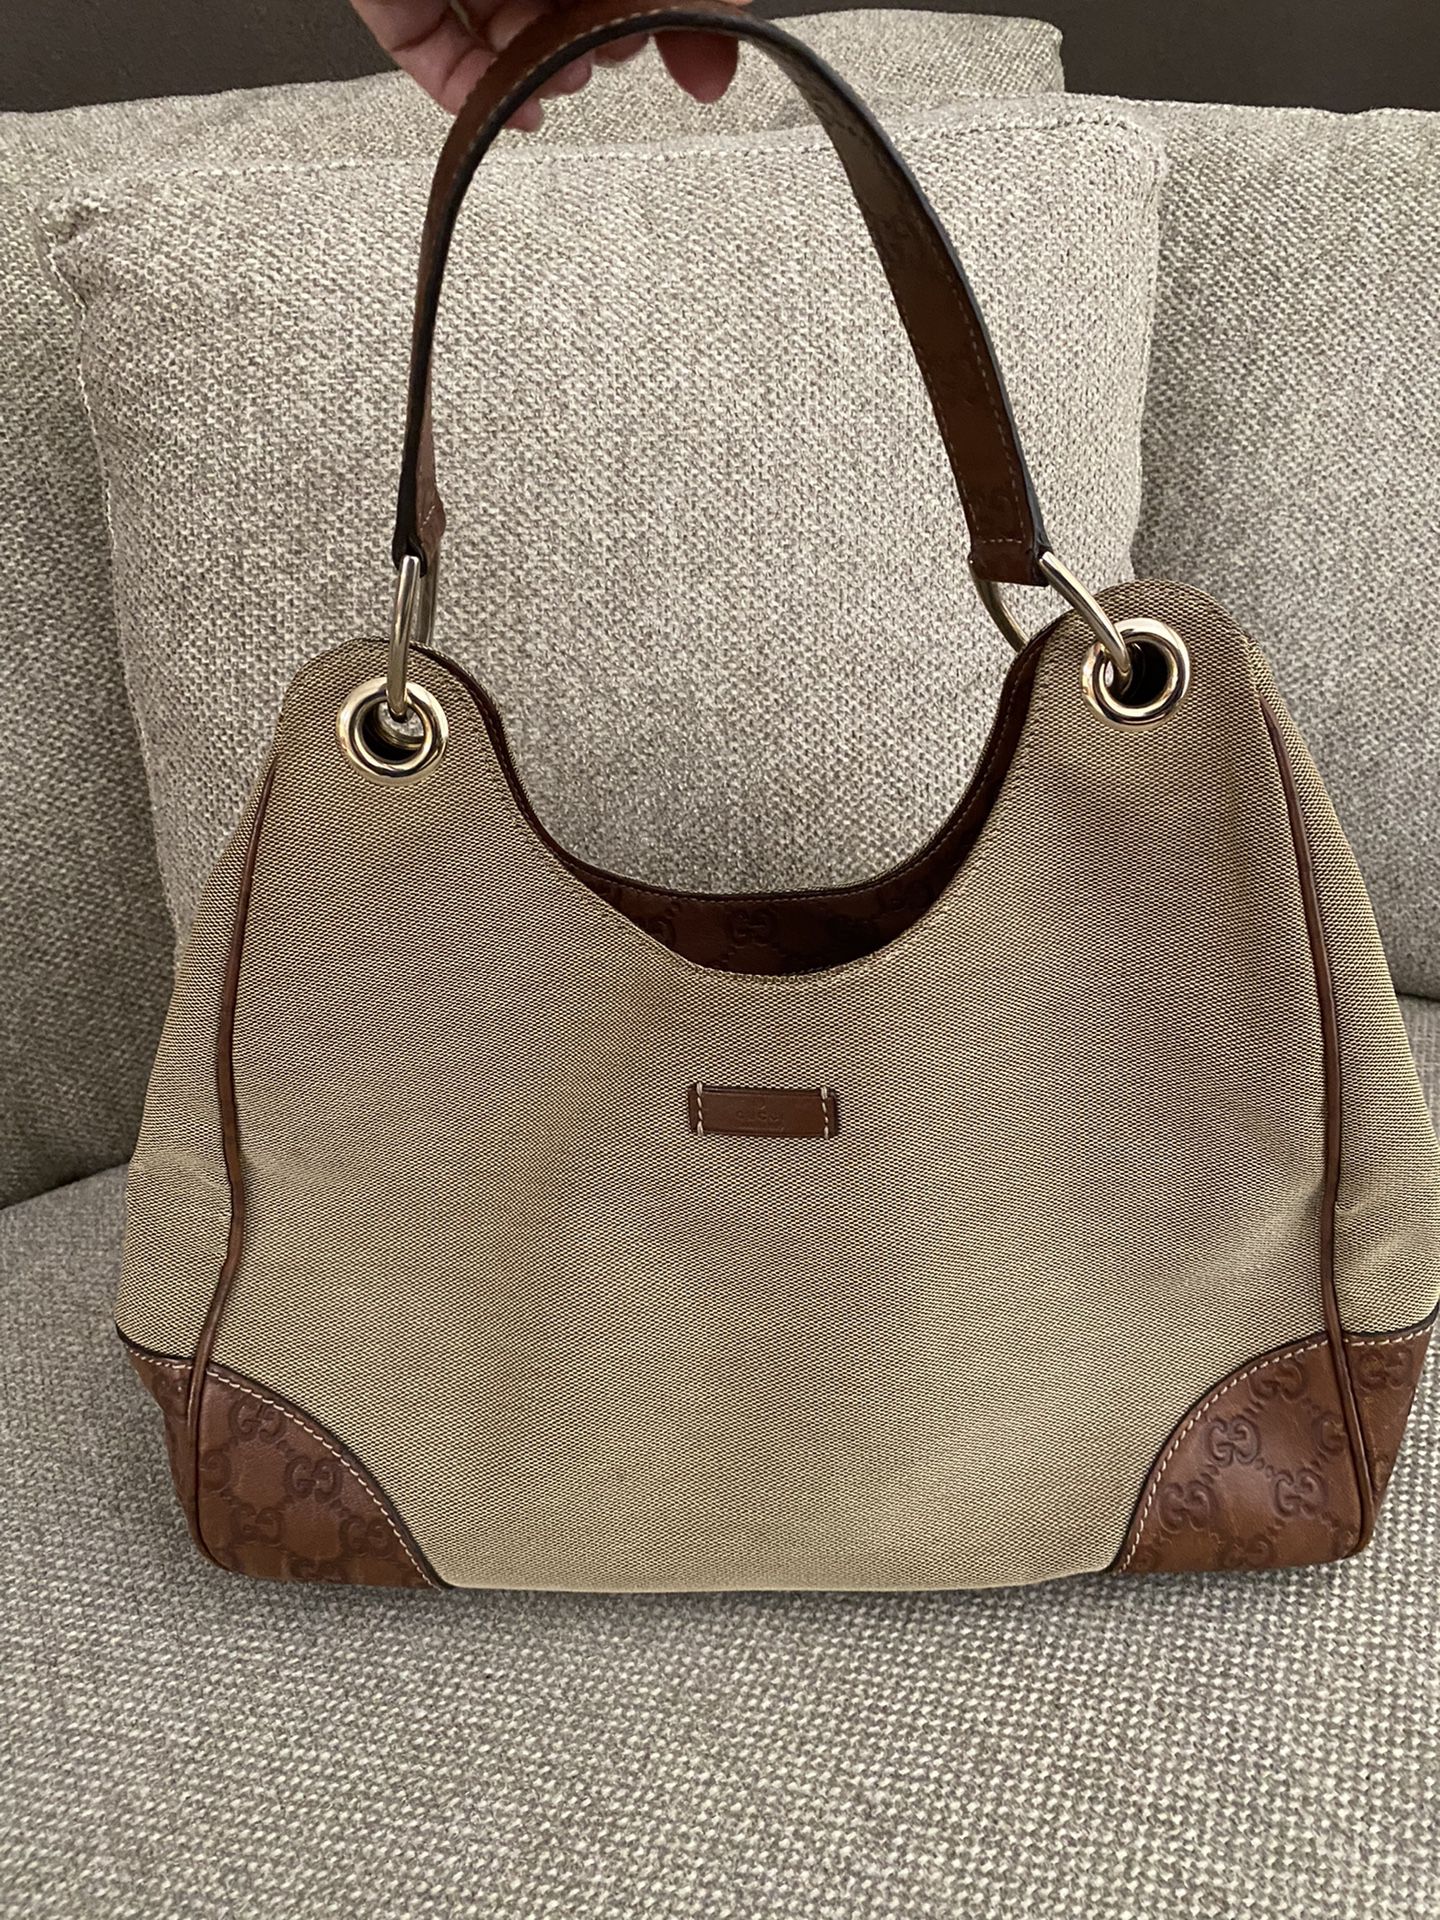 Gucci Handbag - $400